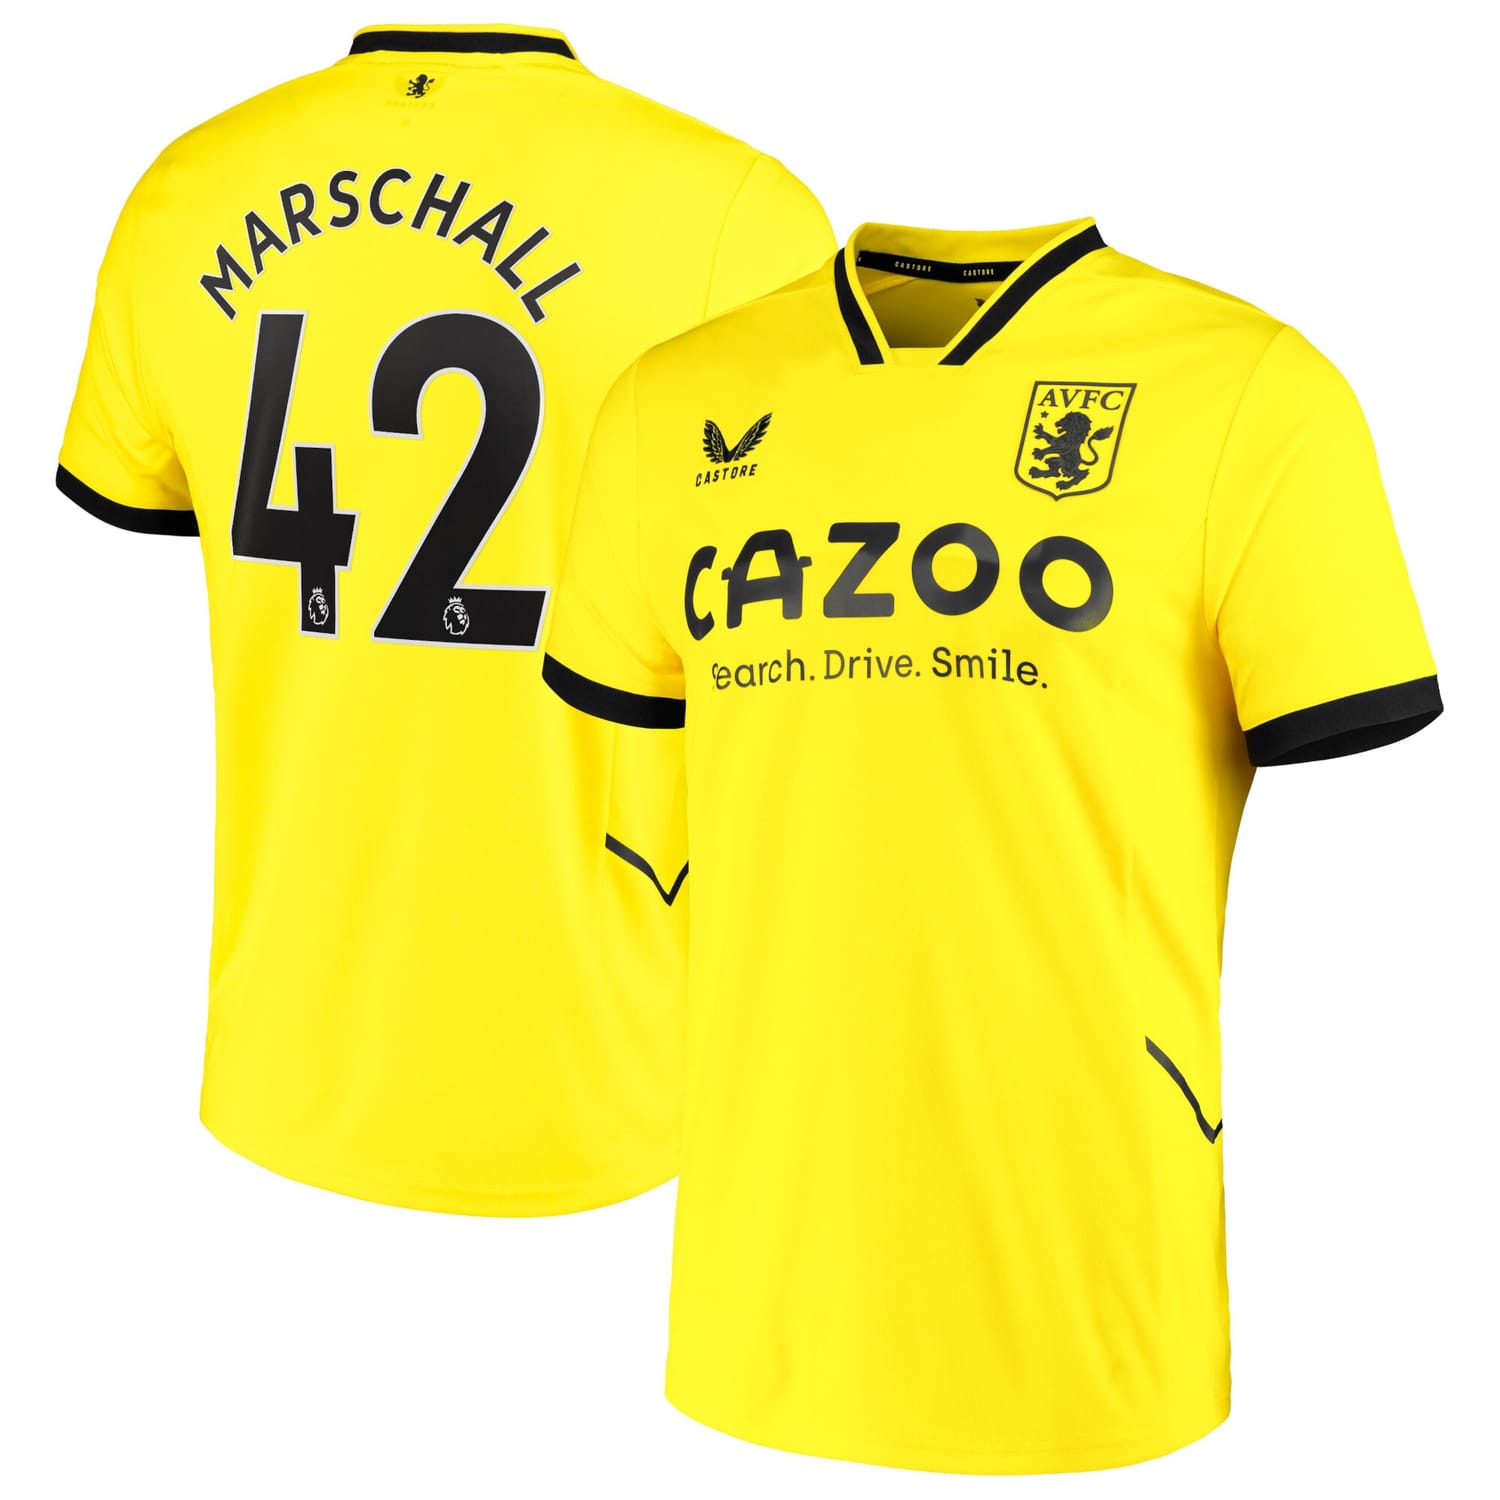 Premier League Aston Villa Third Goalkeeper Jersey Shirt 2022-23 player Filip Marschall 42 printing for Men